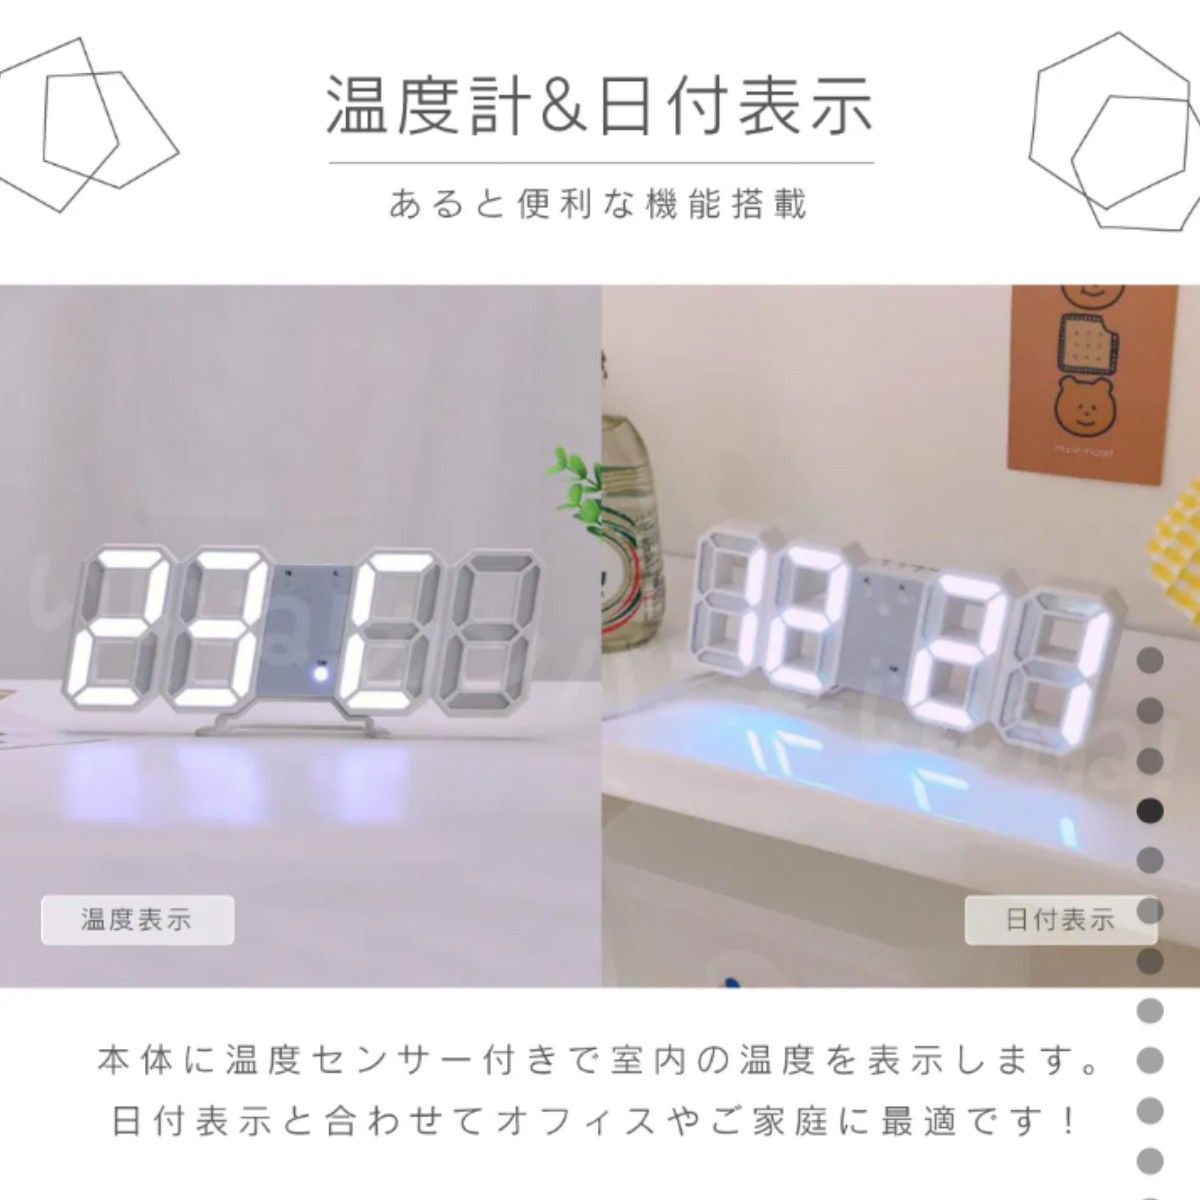 3D 置き時計 デジタル時計 目覚まし時計 壁掛け 温度計 LED インテリア ウォール クロック